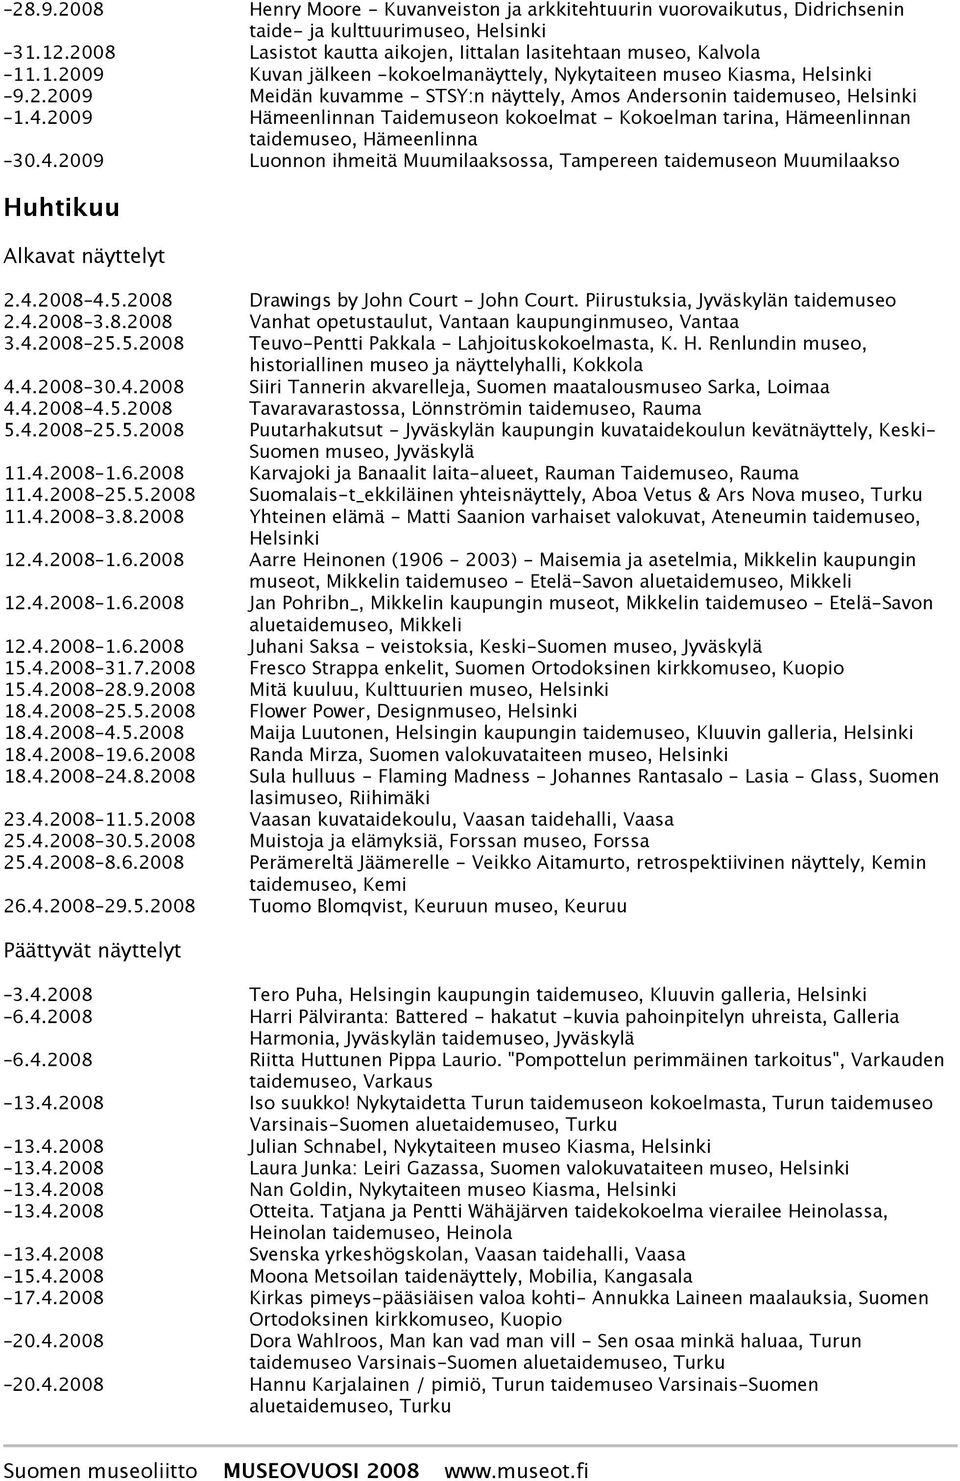 4.2008 4.5.2008 Drawings by John Court - John Court. Piirustuksia, Jyväskylän taidemuseo 2.4.2008 3.8.2008 Vanhat opetustaulut, Vantaan kaupunginmuseo, Vantaa 3.4.2008 25.5.2008 Teuvo-Pentti Pakkala - Lahjoituskokoelmasta, K.